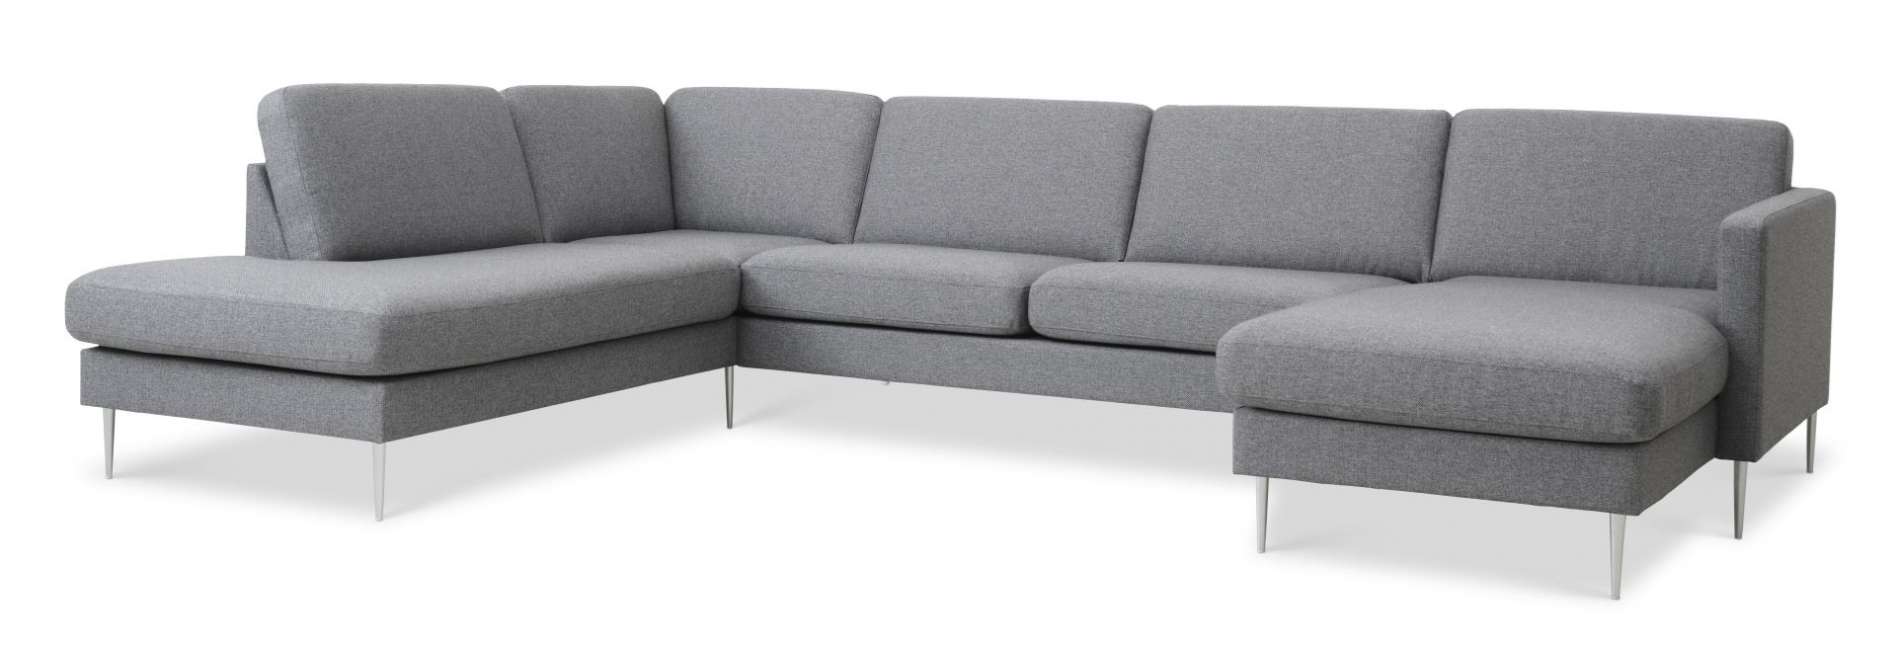 Priser på Ask sæt 54 U OE sofa, m. venstre chaiselong - lys granitgrå polyester stof og børstet aluminium